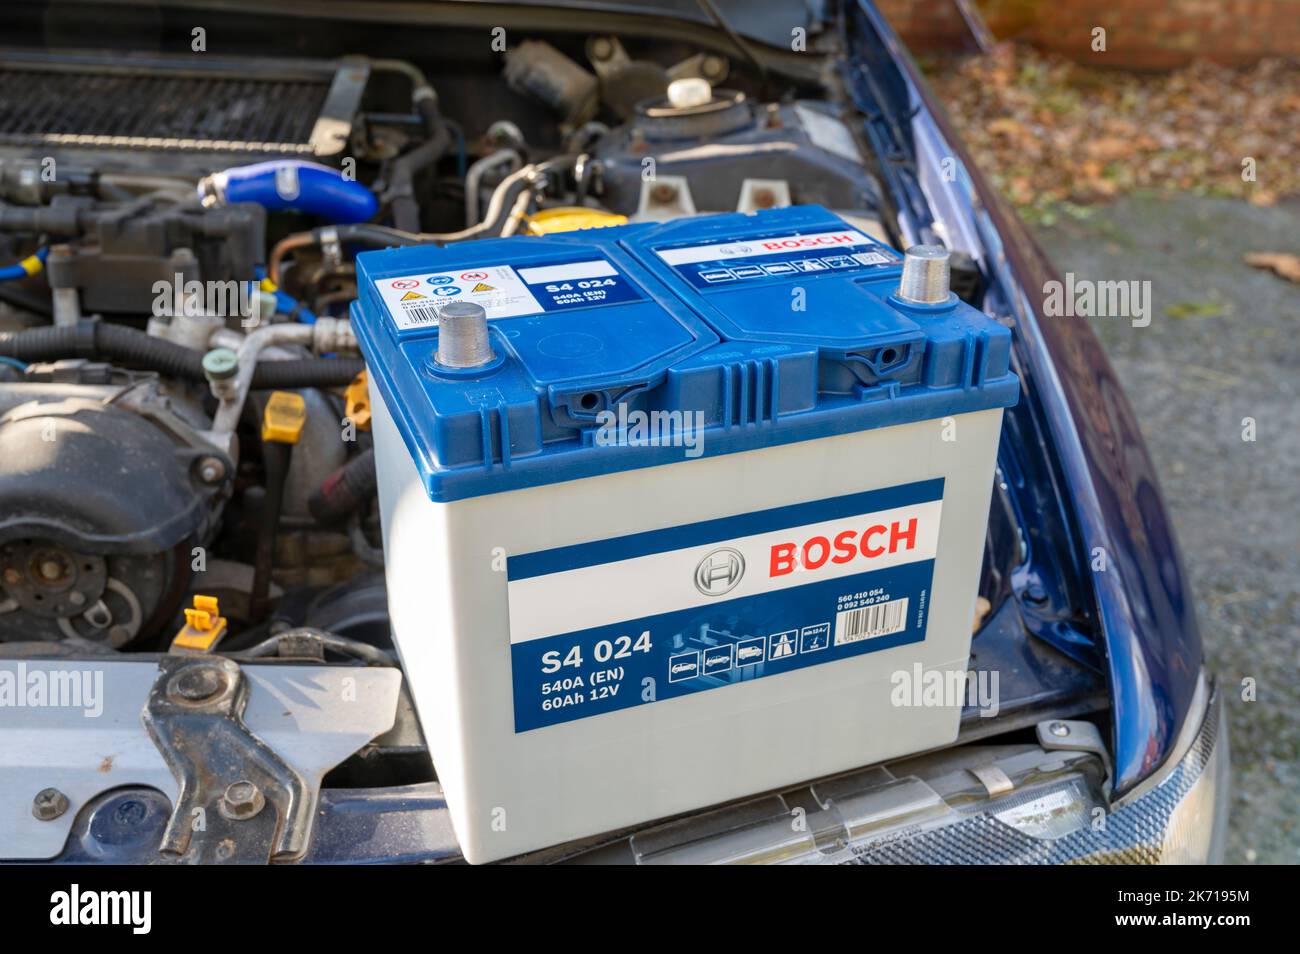 12v lead acid battery car immagini e fotografie stock ad alta risoluzione -  Alamy